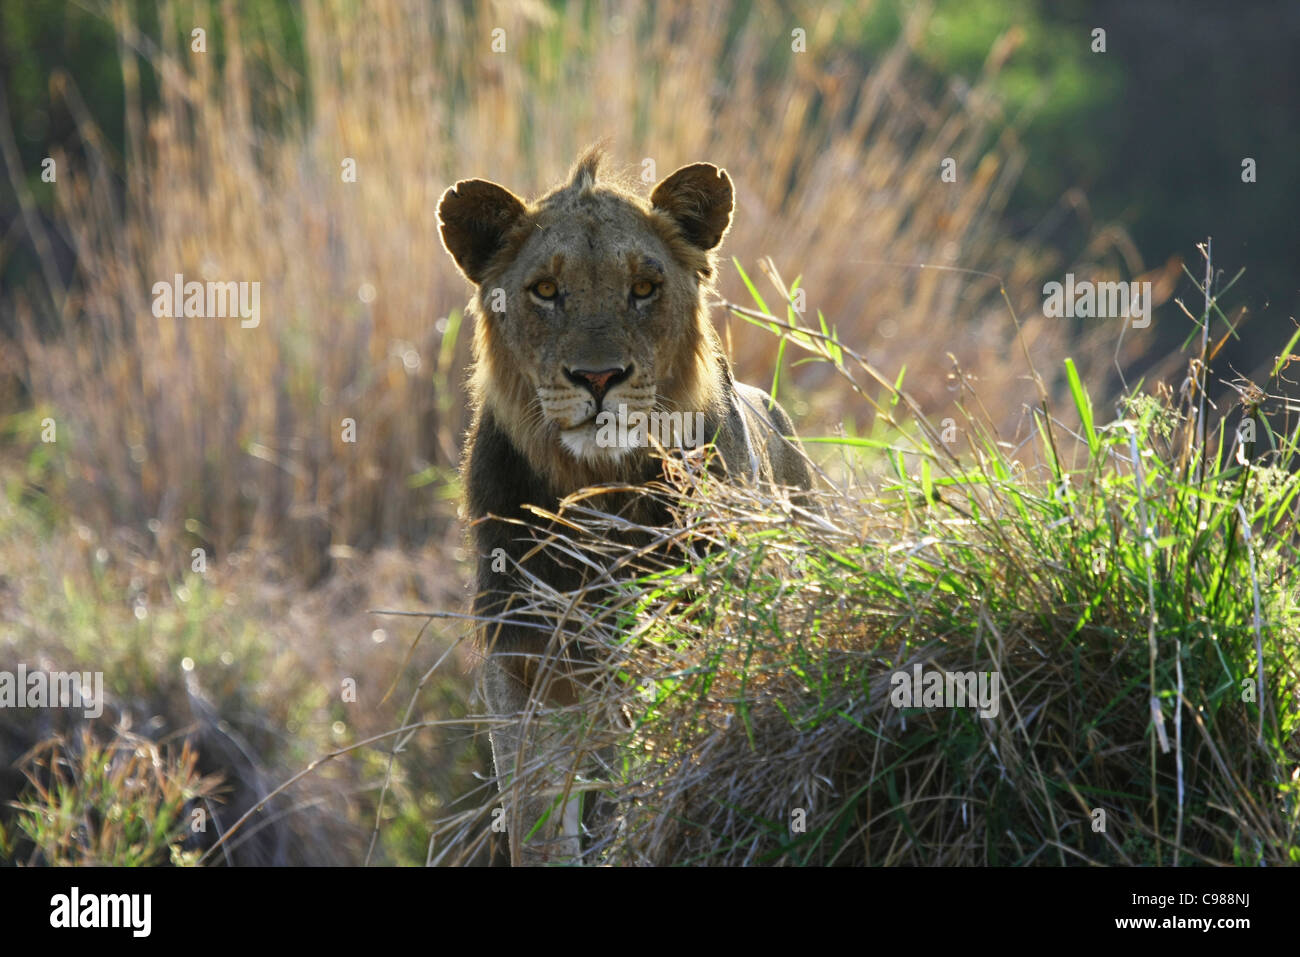 Vue frontale d'un homme lion debout derrière une touffe d'herbe Banque D'Images